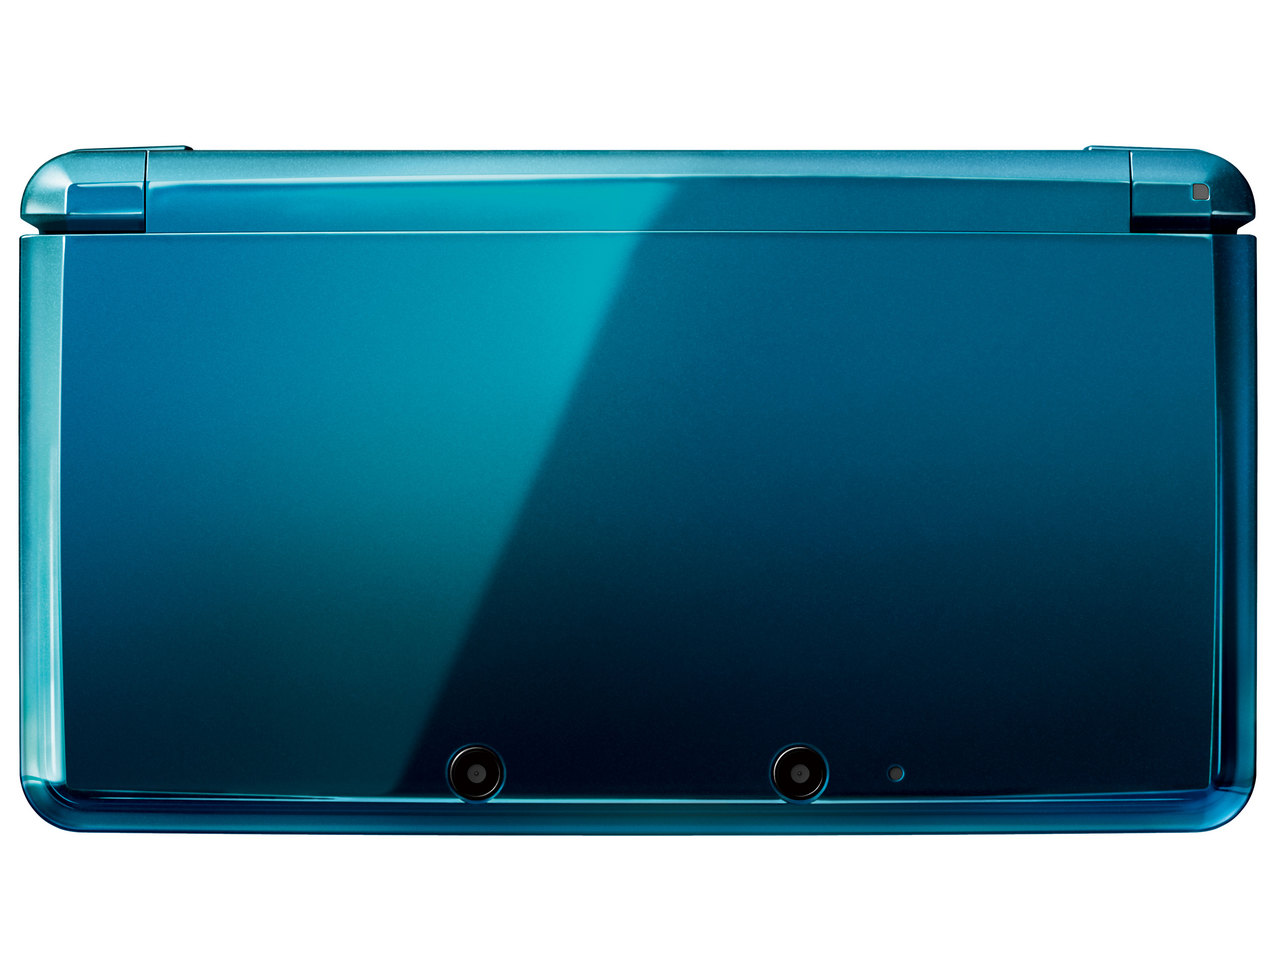 価格.com - 『本体 正面2』 ニンテンドー3DS アクアブルー の製品画像